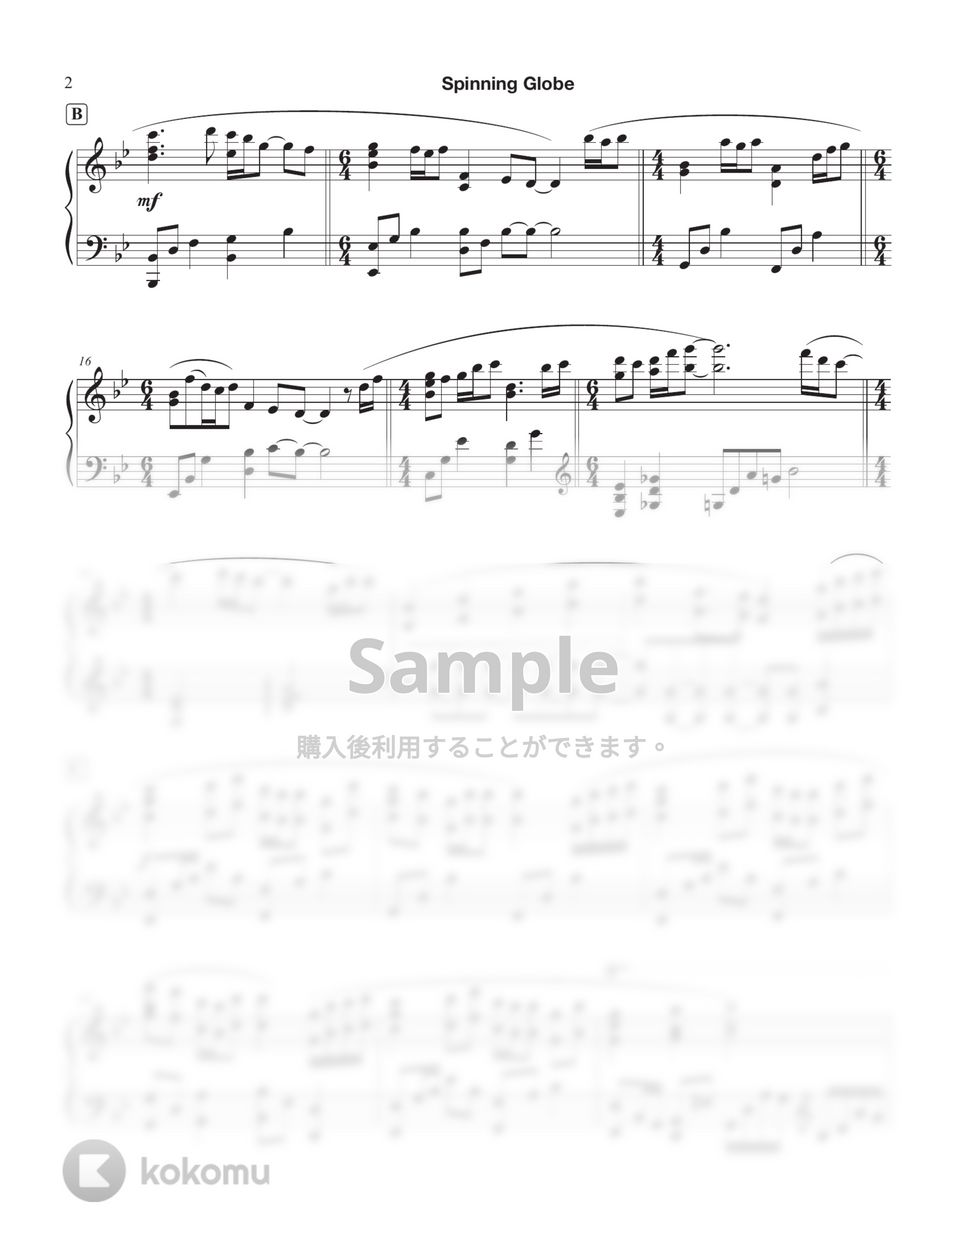 米津玄師 - 地球儀 (簡単な楽譜を含む) by Tully Piano